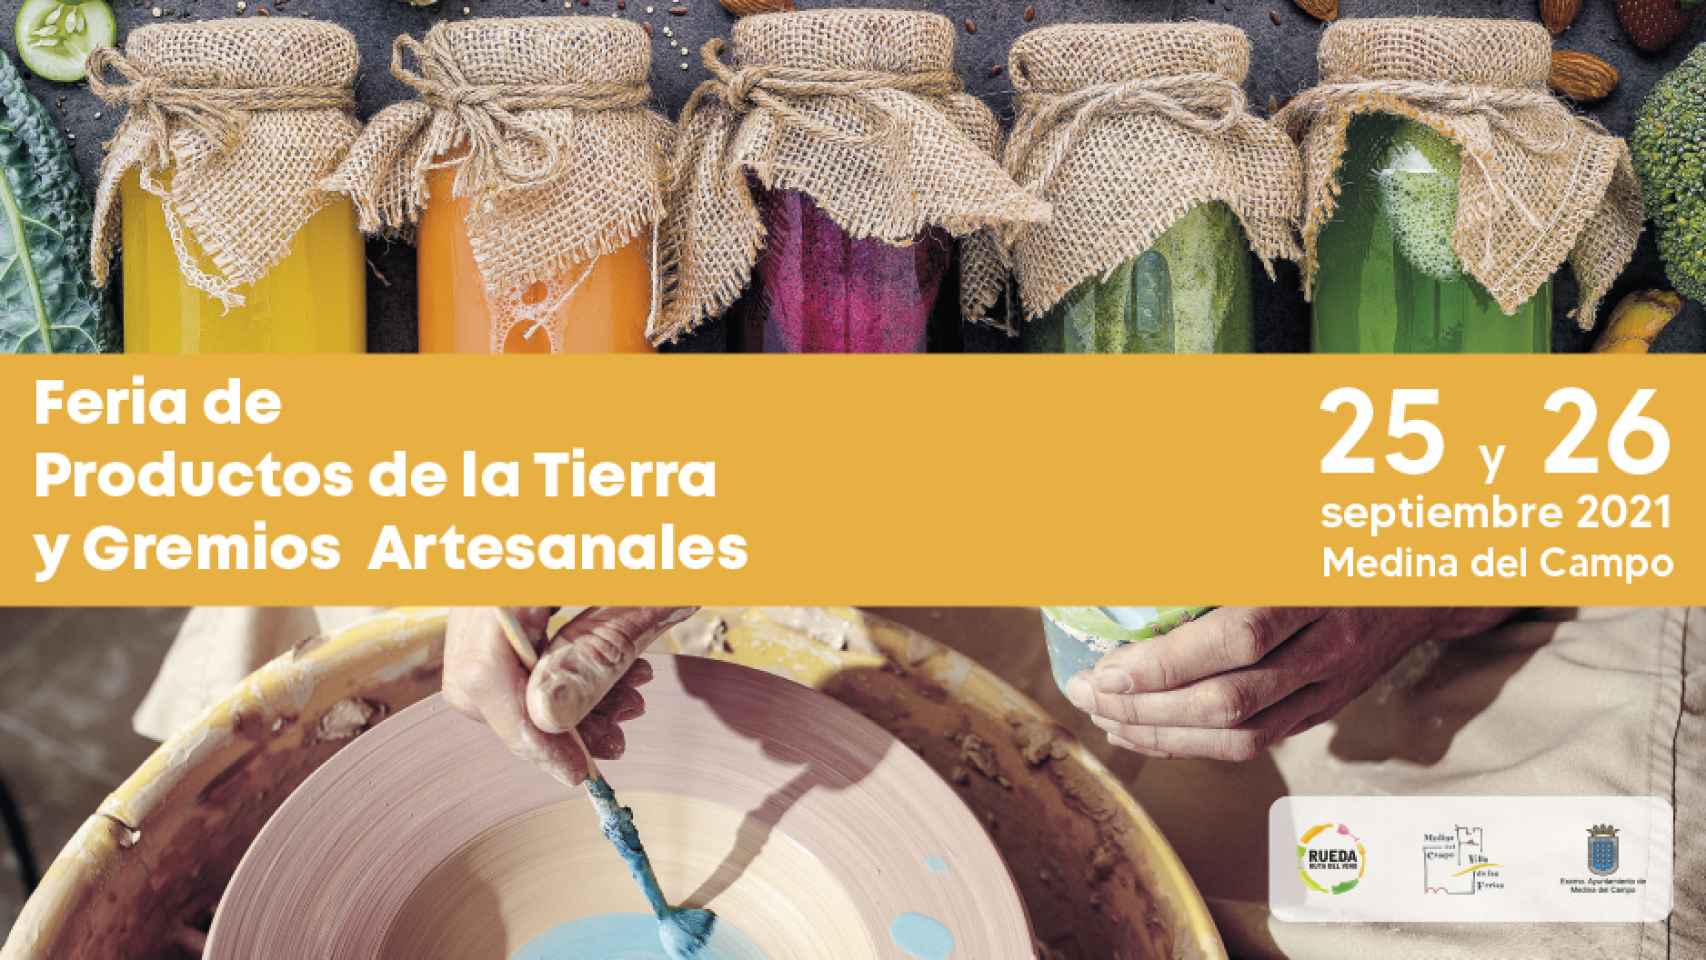 Cartel Feria de Productos de la Tierra y Gremios Artesanales de Medina del Campo